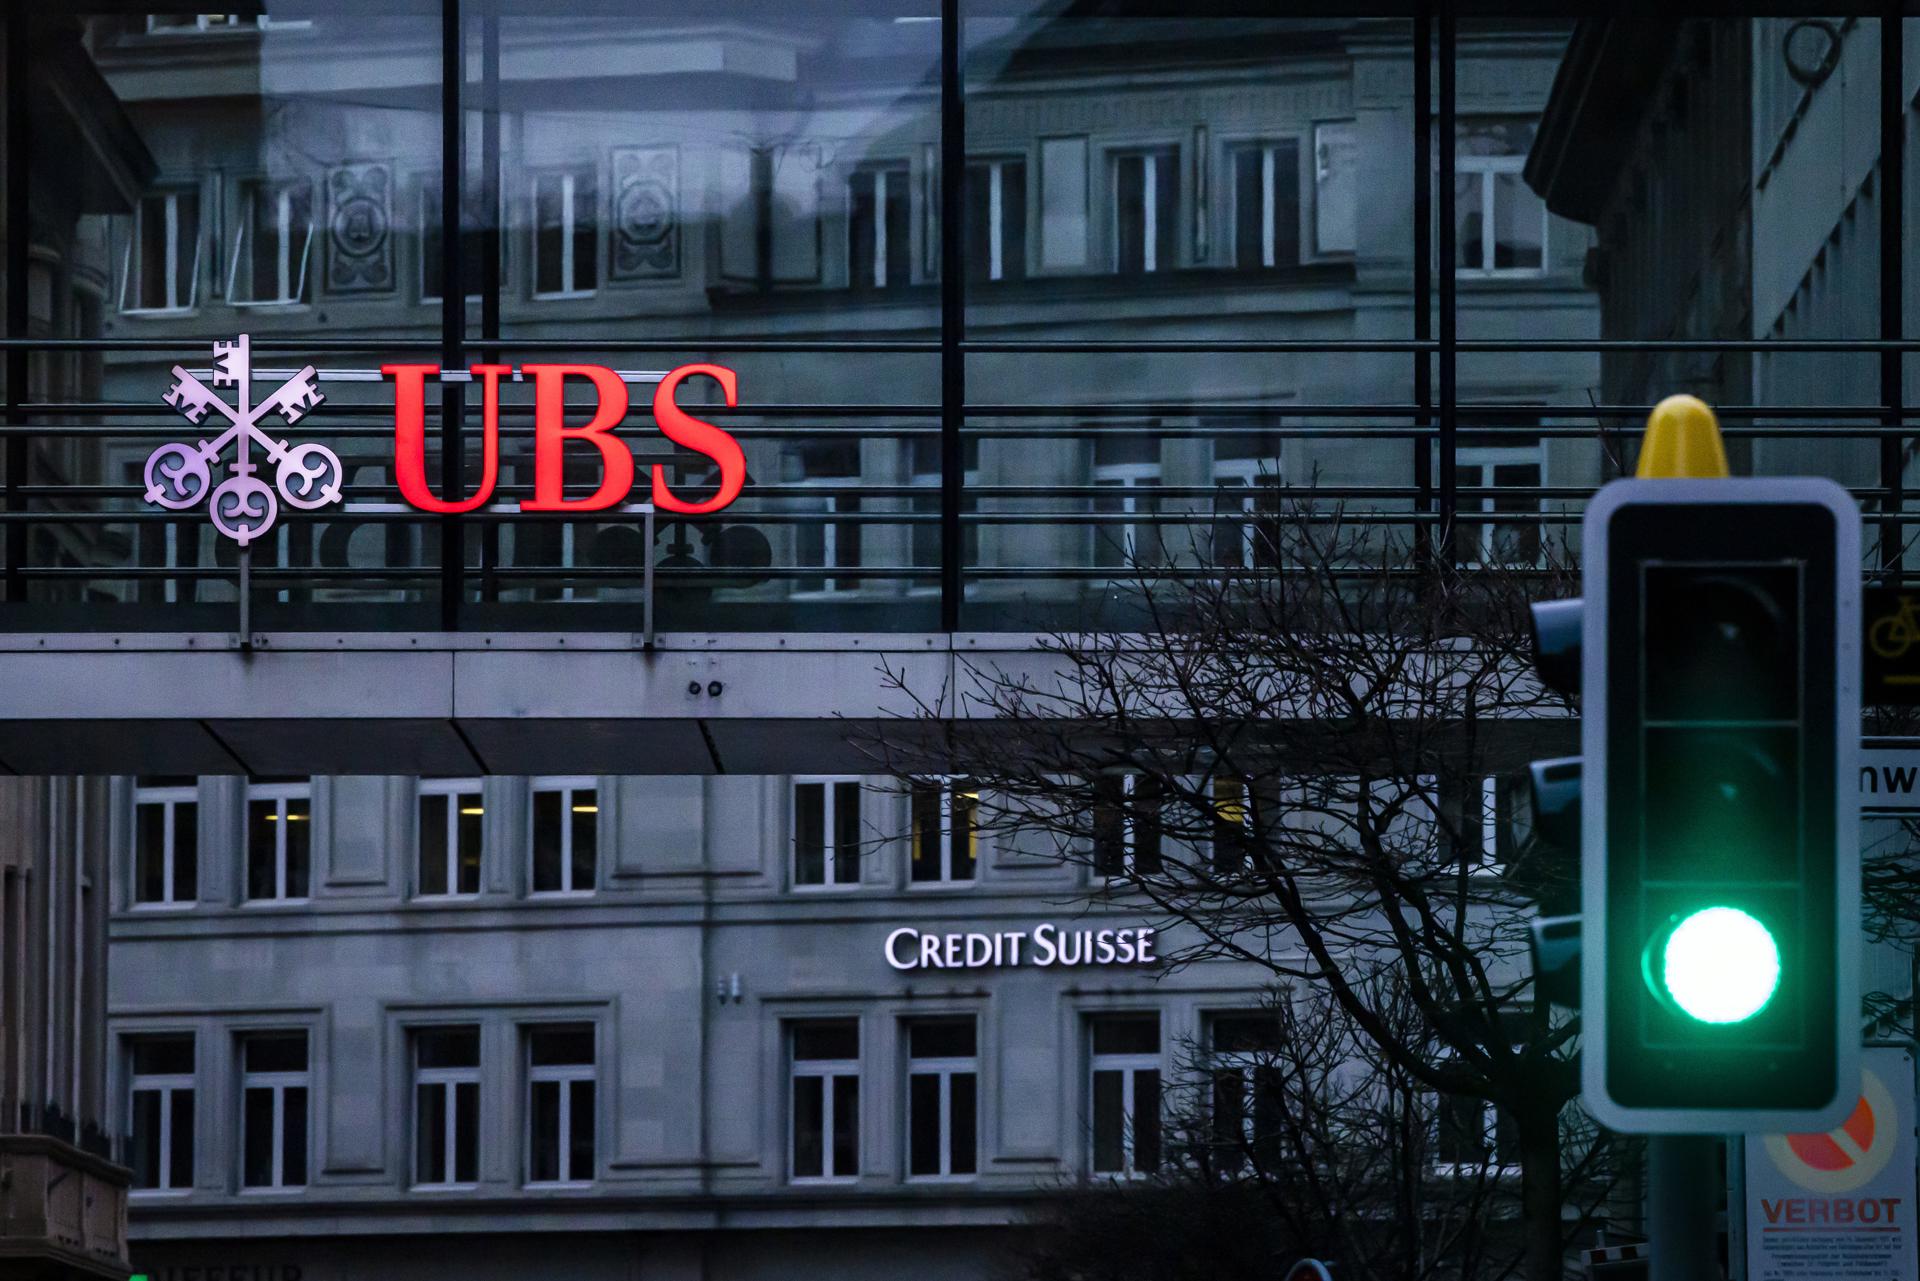 Zúrich (Suiza), 19/03/2023.- Los logotipos de los bancos suizos Credit Suisse y UBS aparecen en diferentes edificios detrás de los semáforos de Zúrich (Suiza), el 19 de marzo de 2023. (Suiza) EFE/EPA/MICHAEL BUHOLZER.